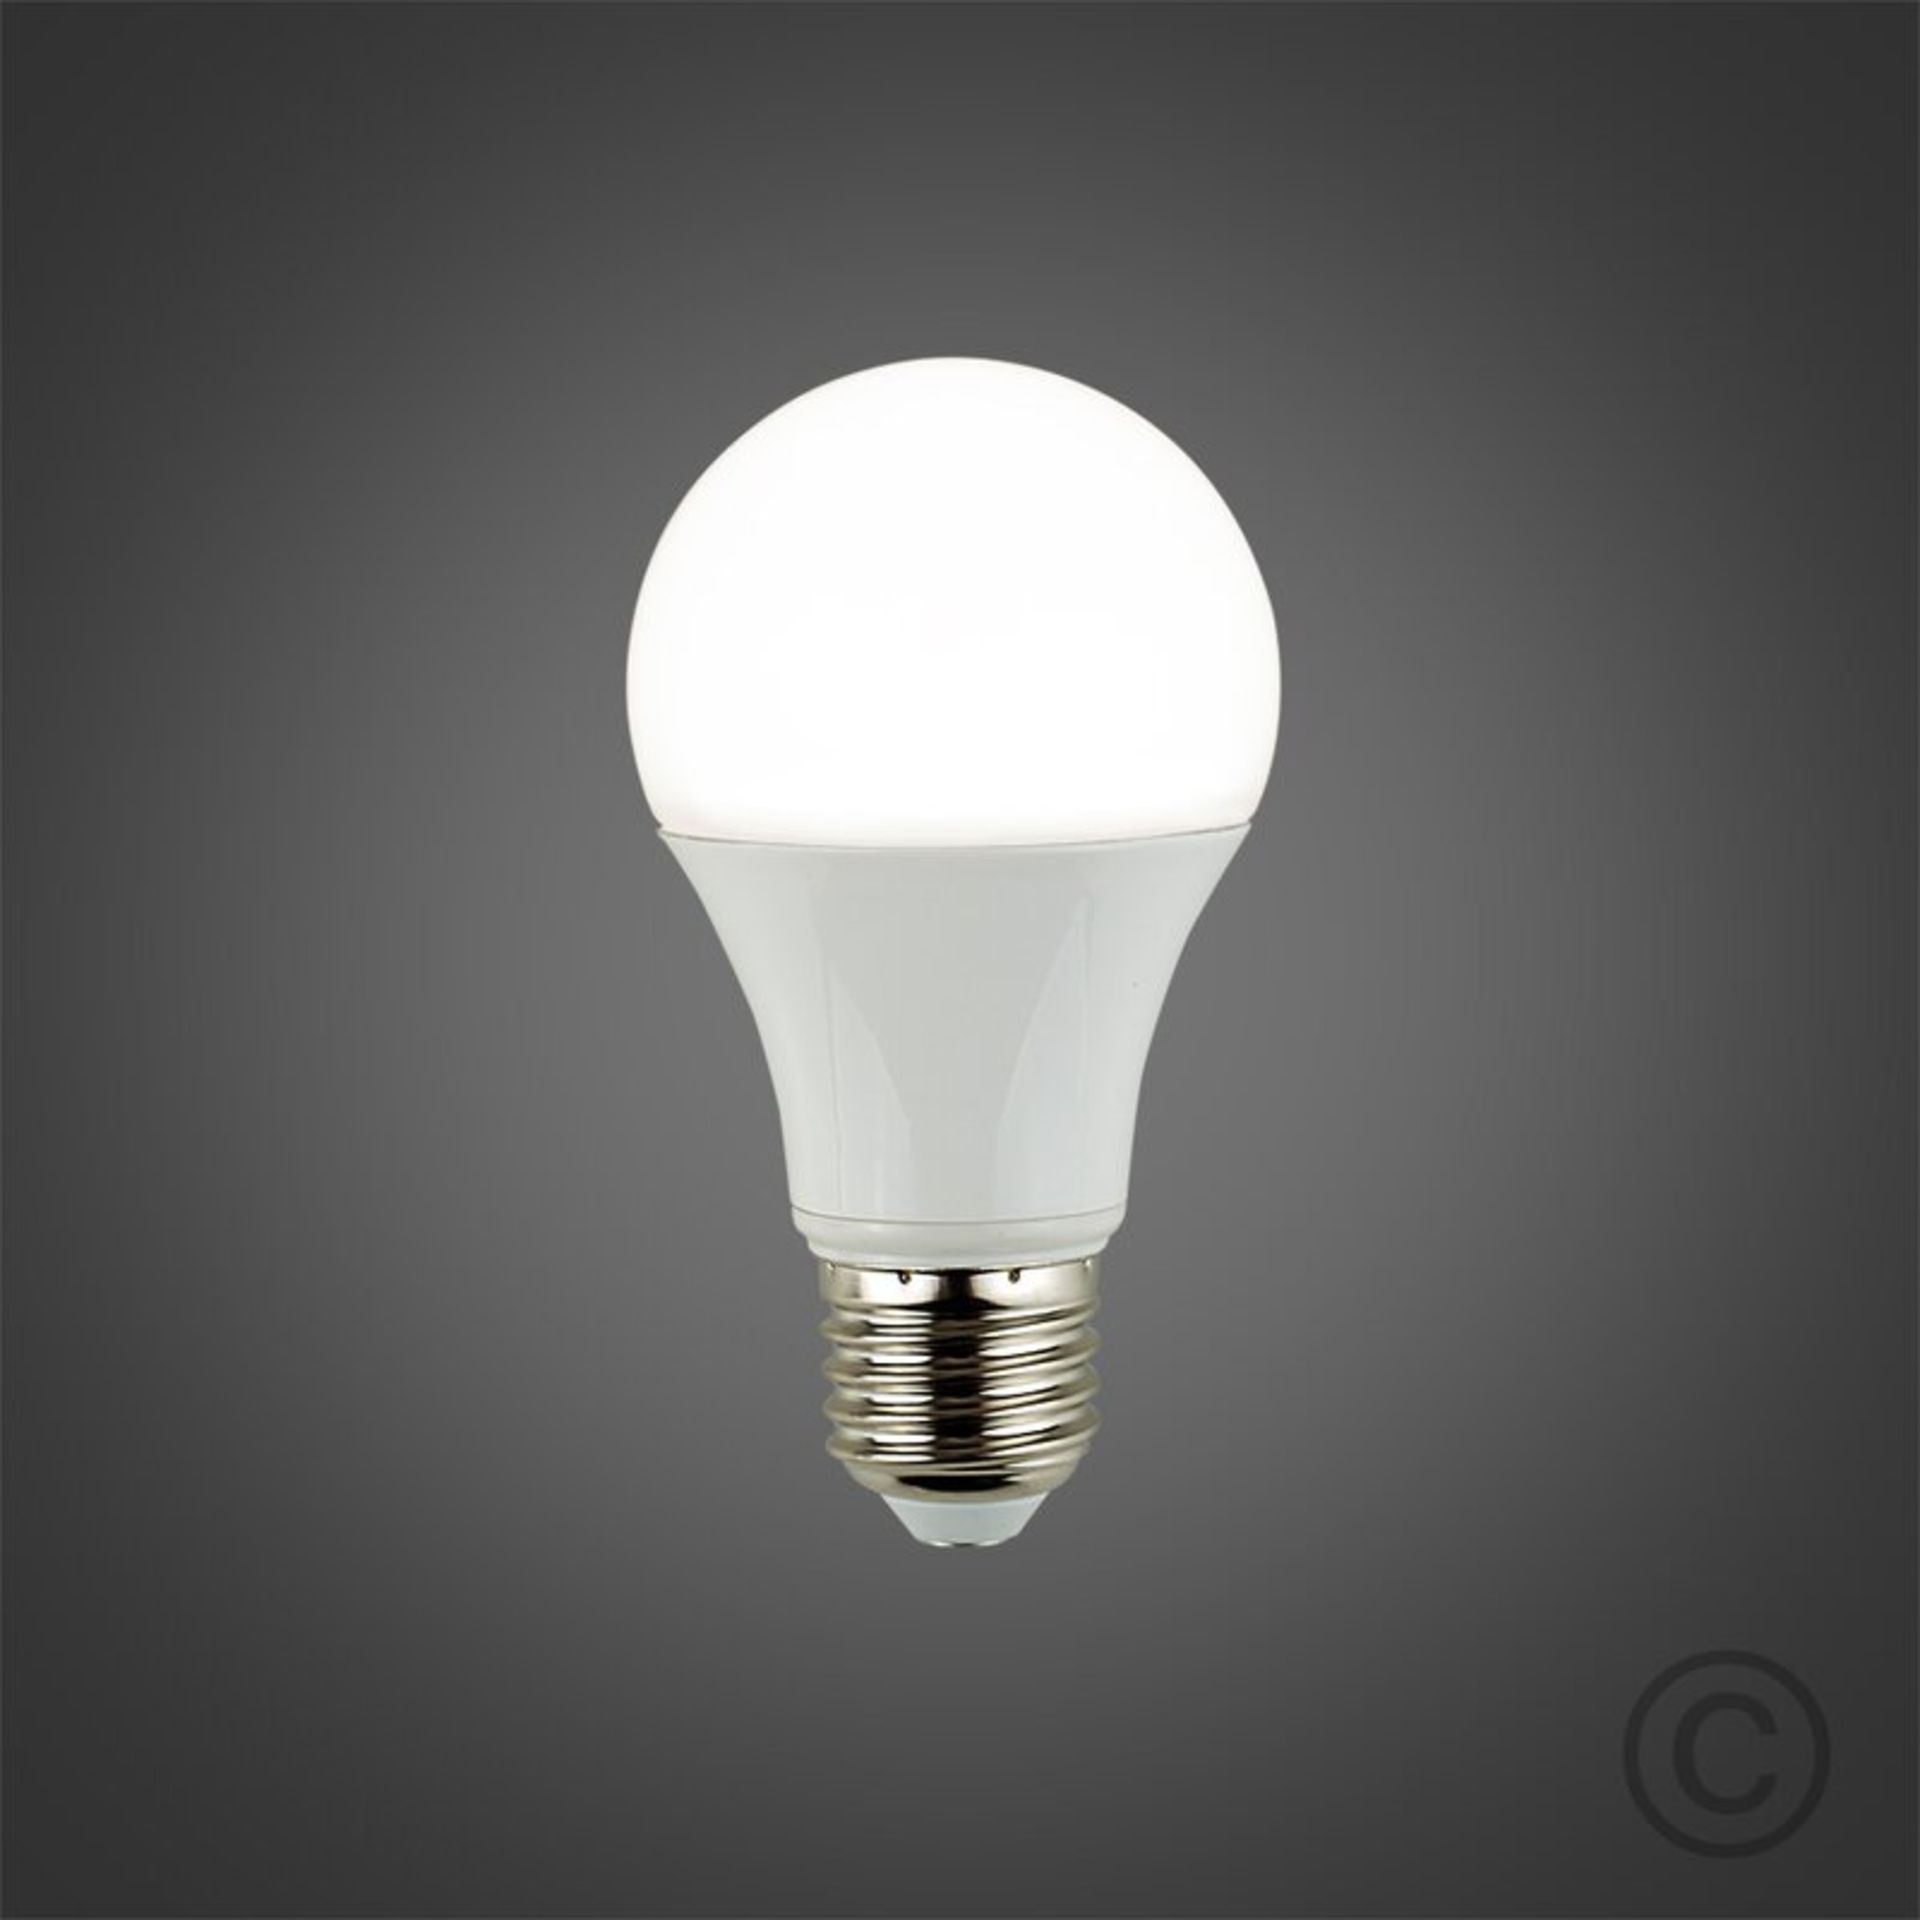 Wayfair Basics 2 x E27 LED Light Bulb